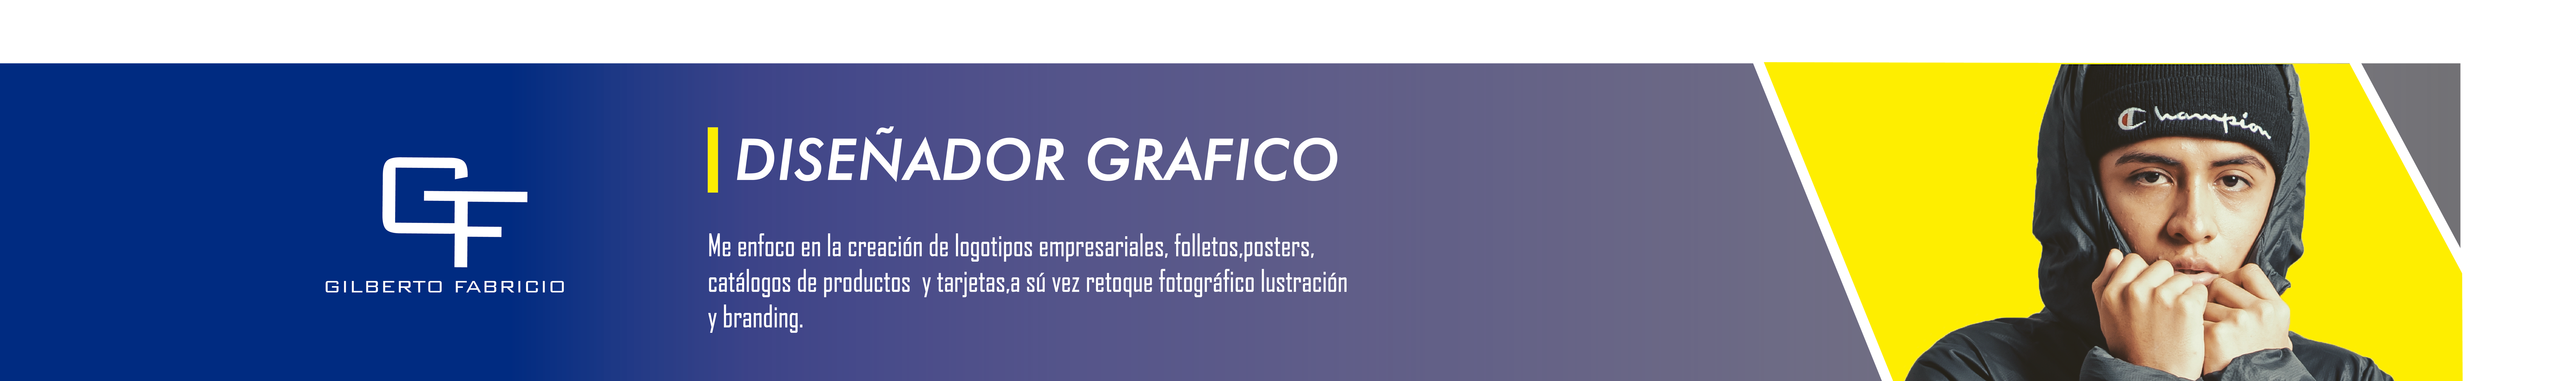 gilberto fabricio zapata sanchez's profile banner